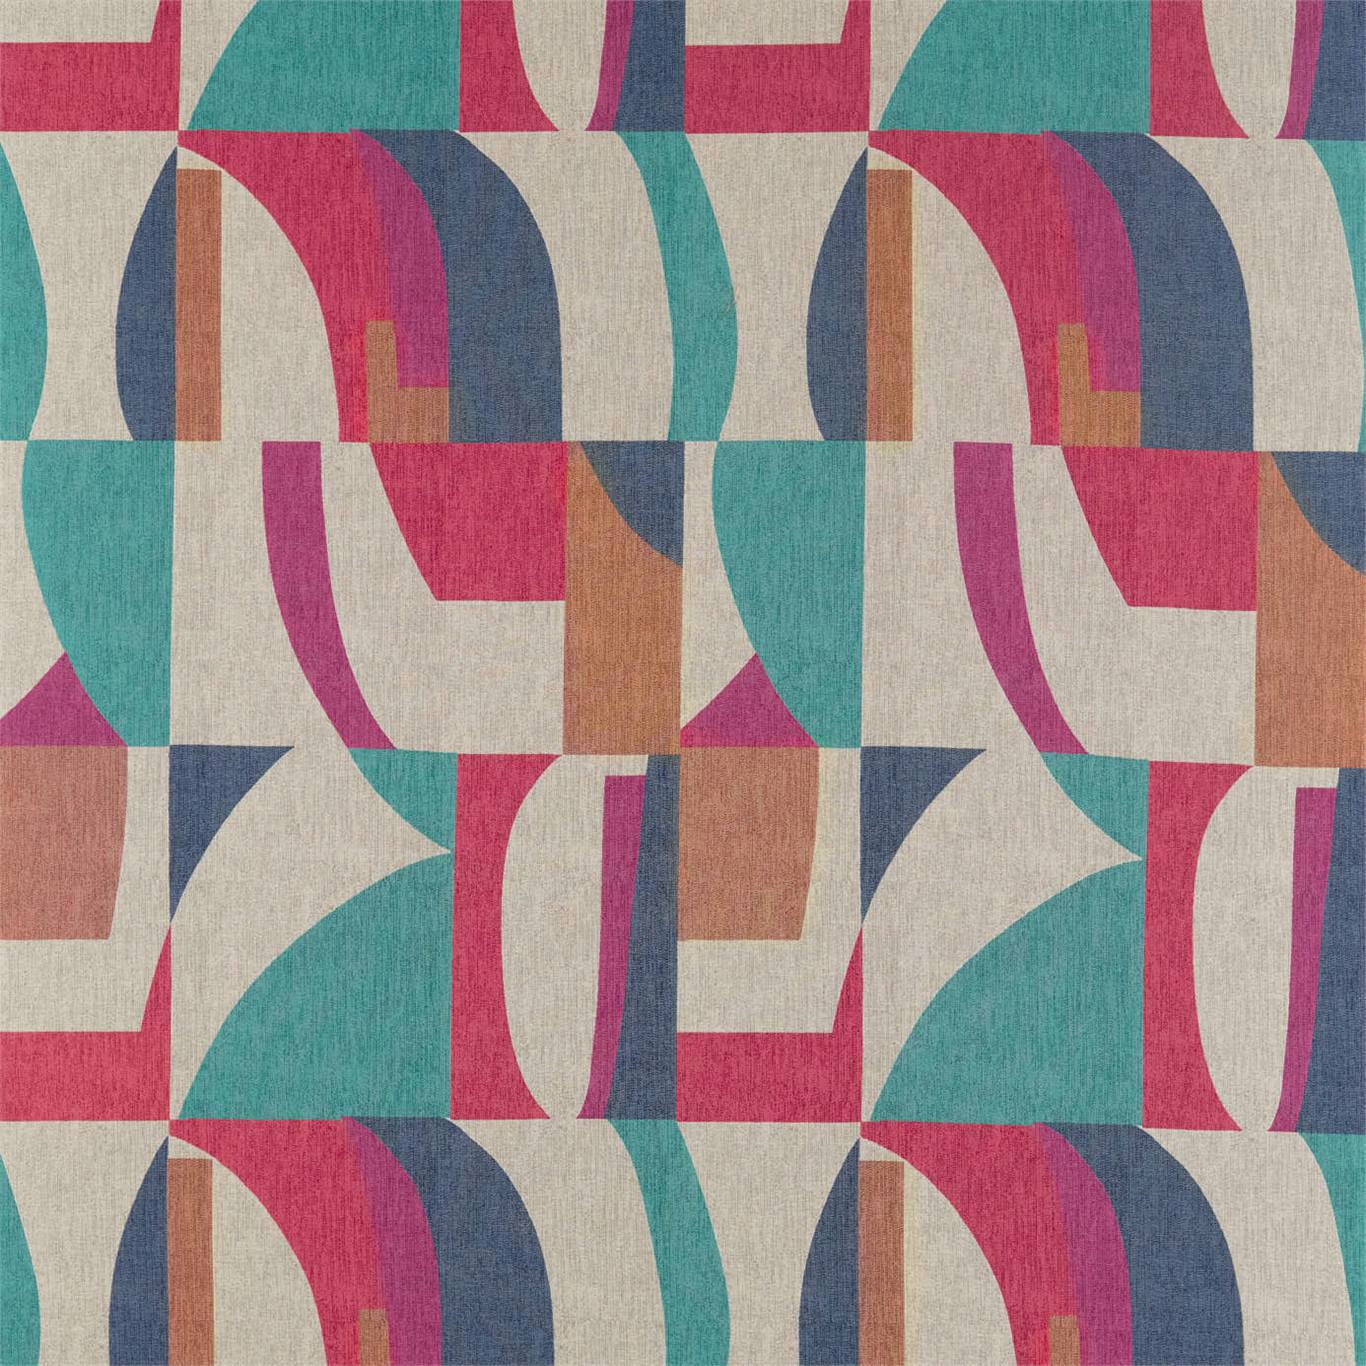 Bodega Fabric by Harlequin - HATL132868 - Indigo / Mandarin / Fuchsia